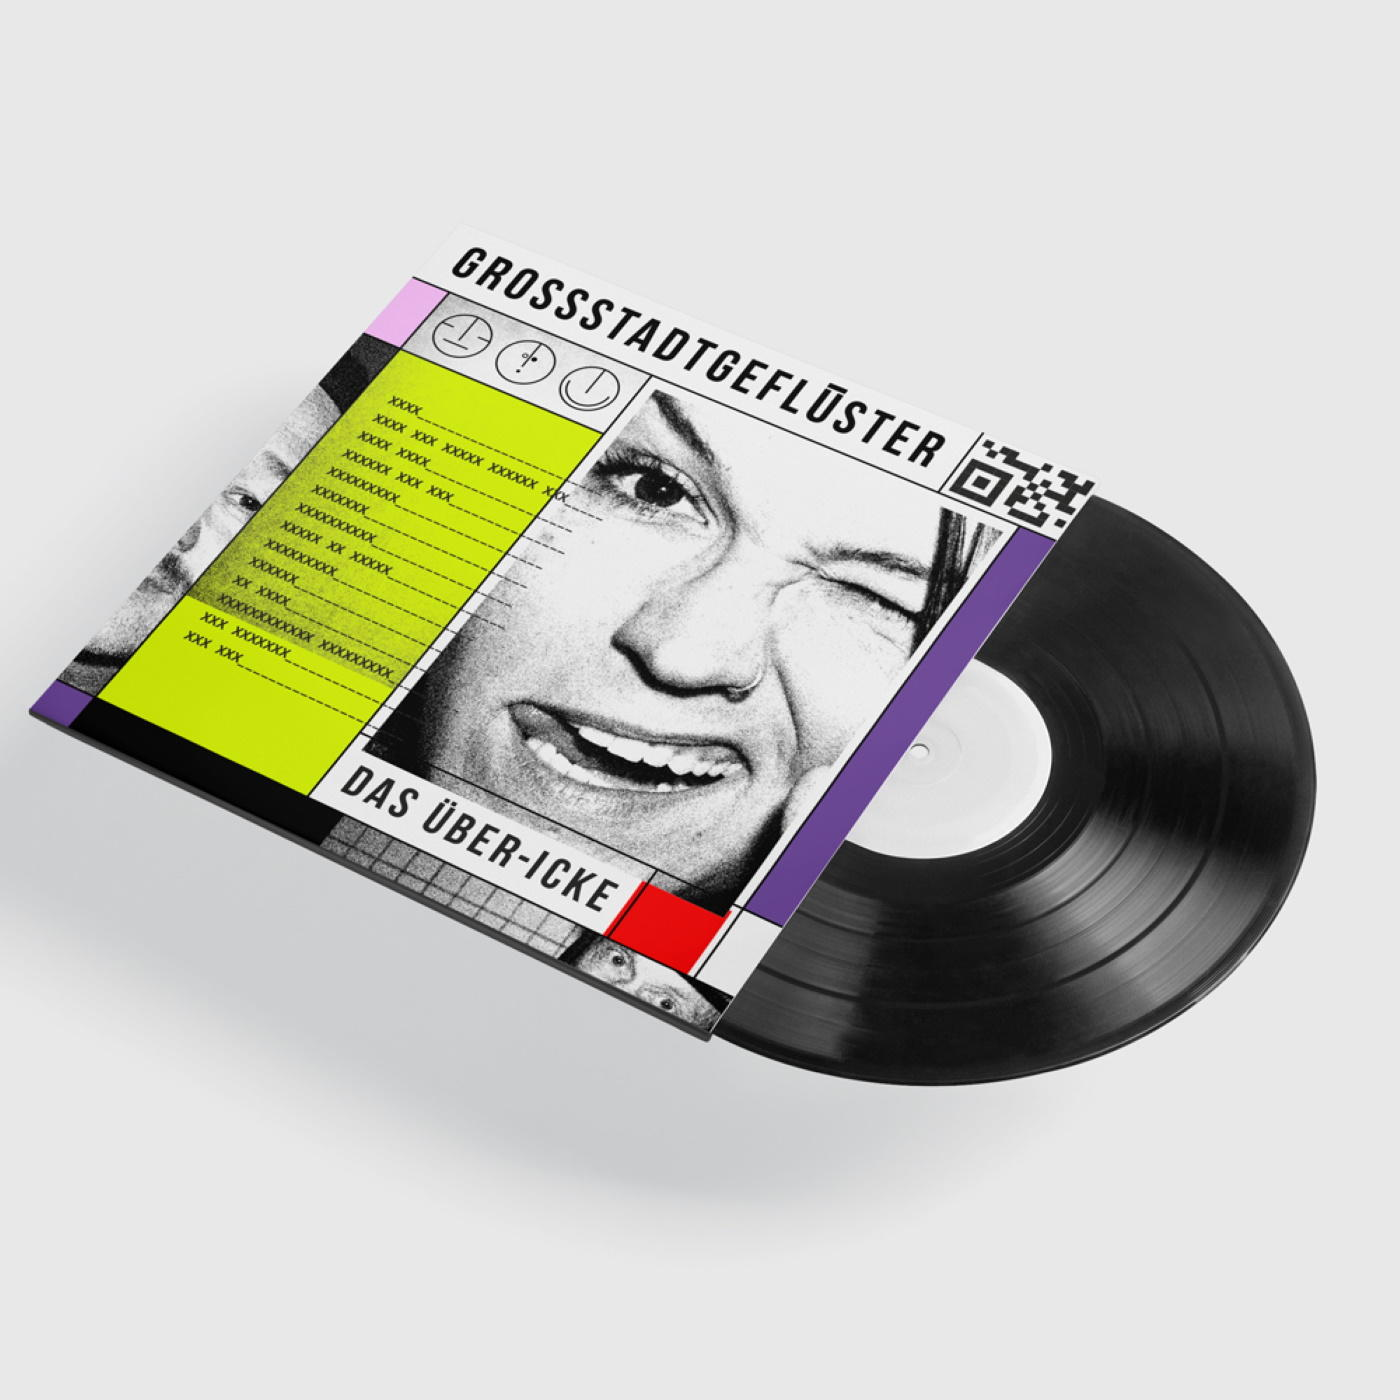 Grossstadtgeflüster - - DAS ÜBER-ICKE (Vinyl)